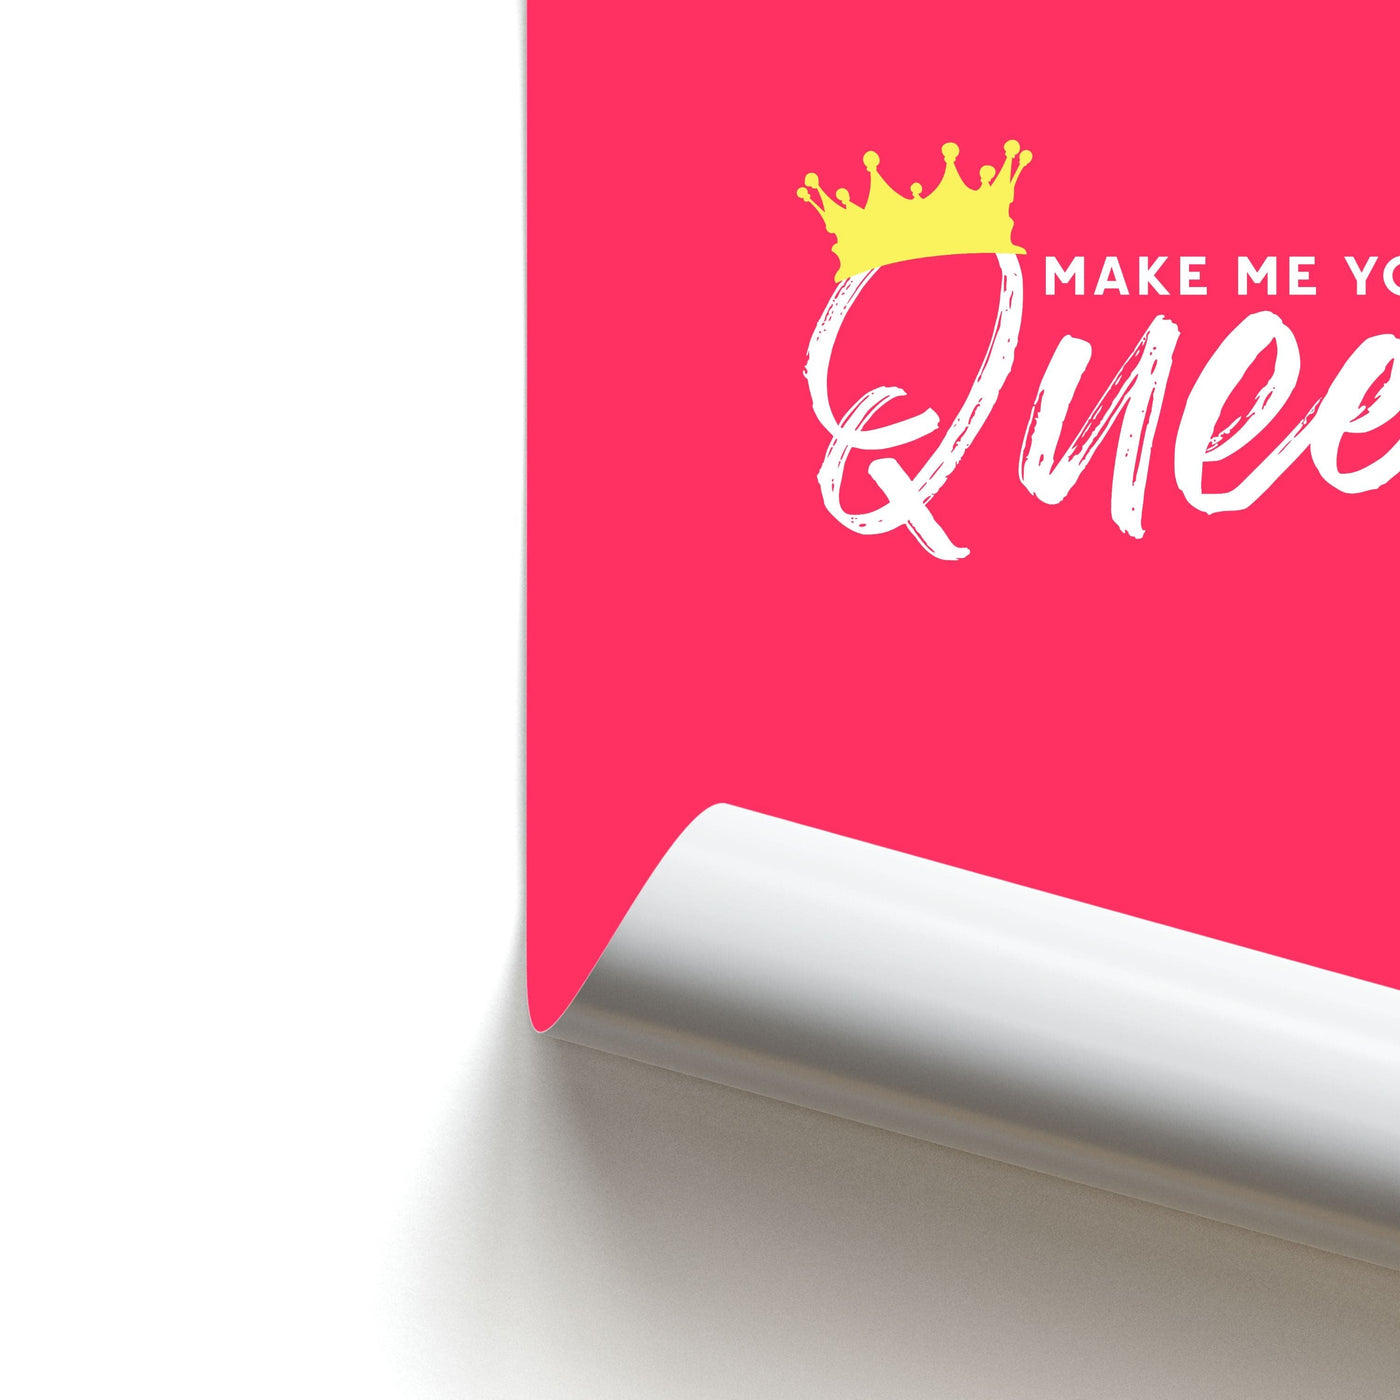 Make Me Your Queen - Declan Mckenna Poster